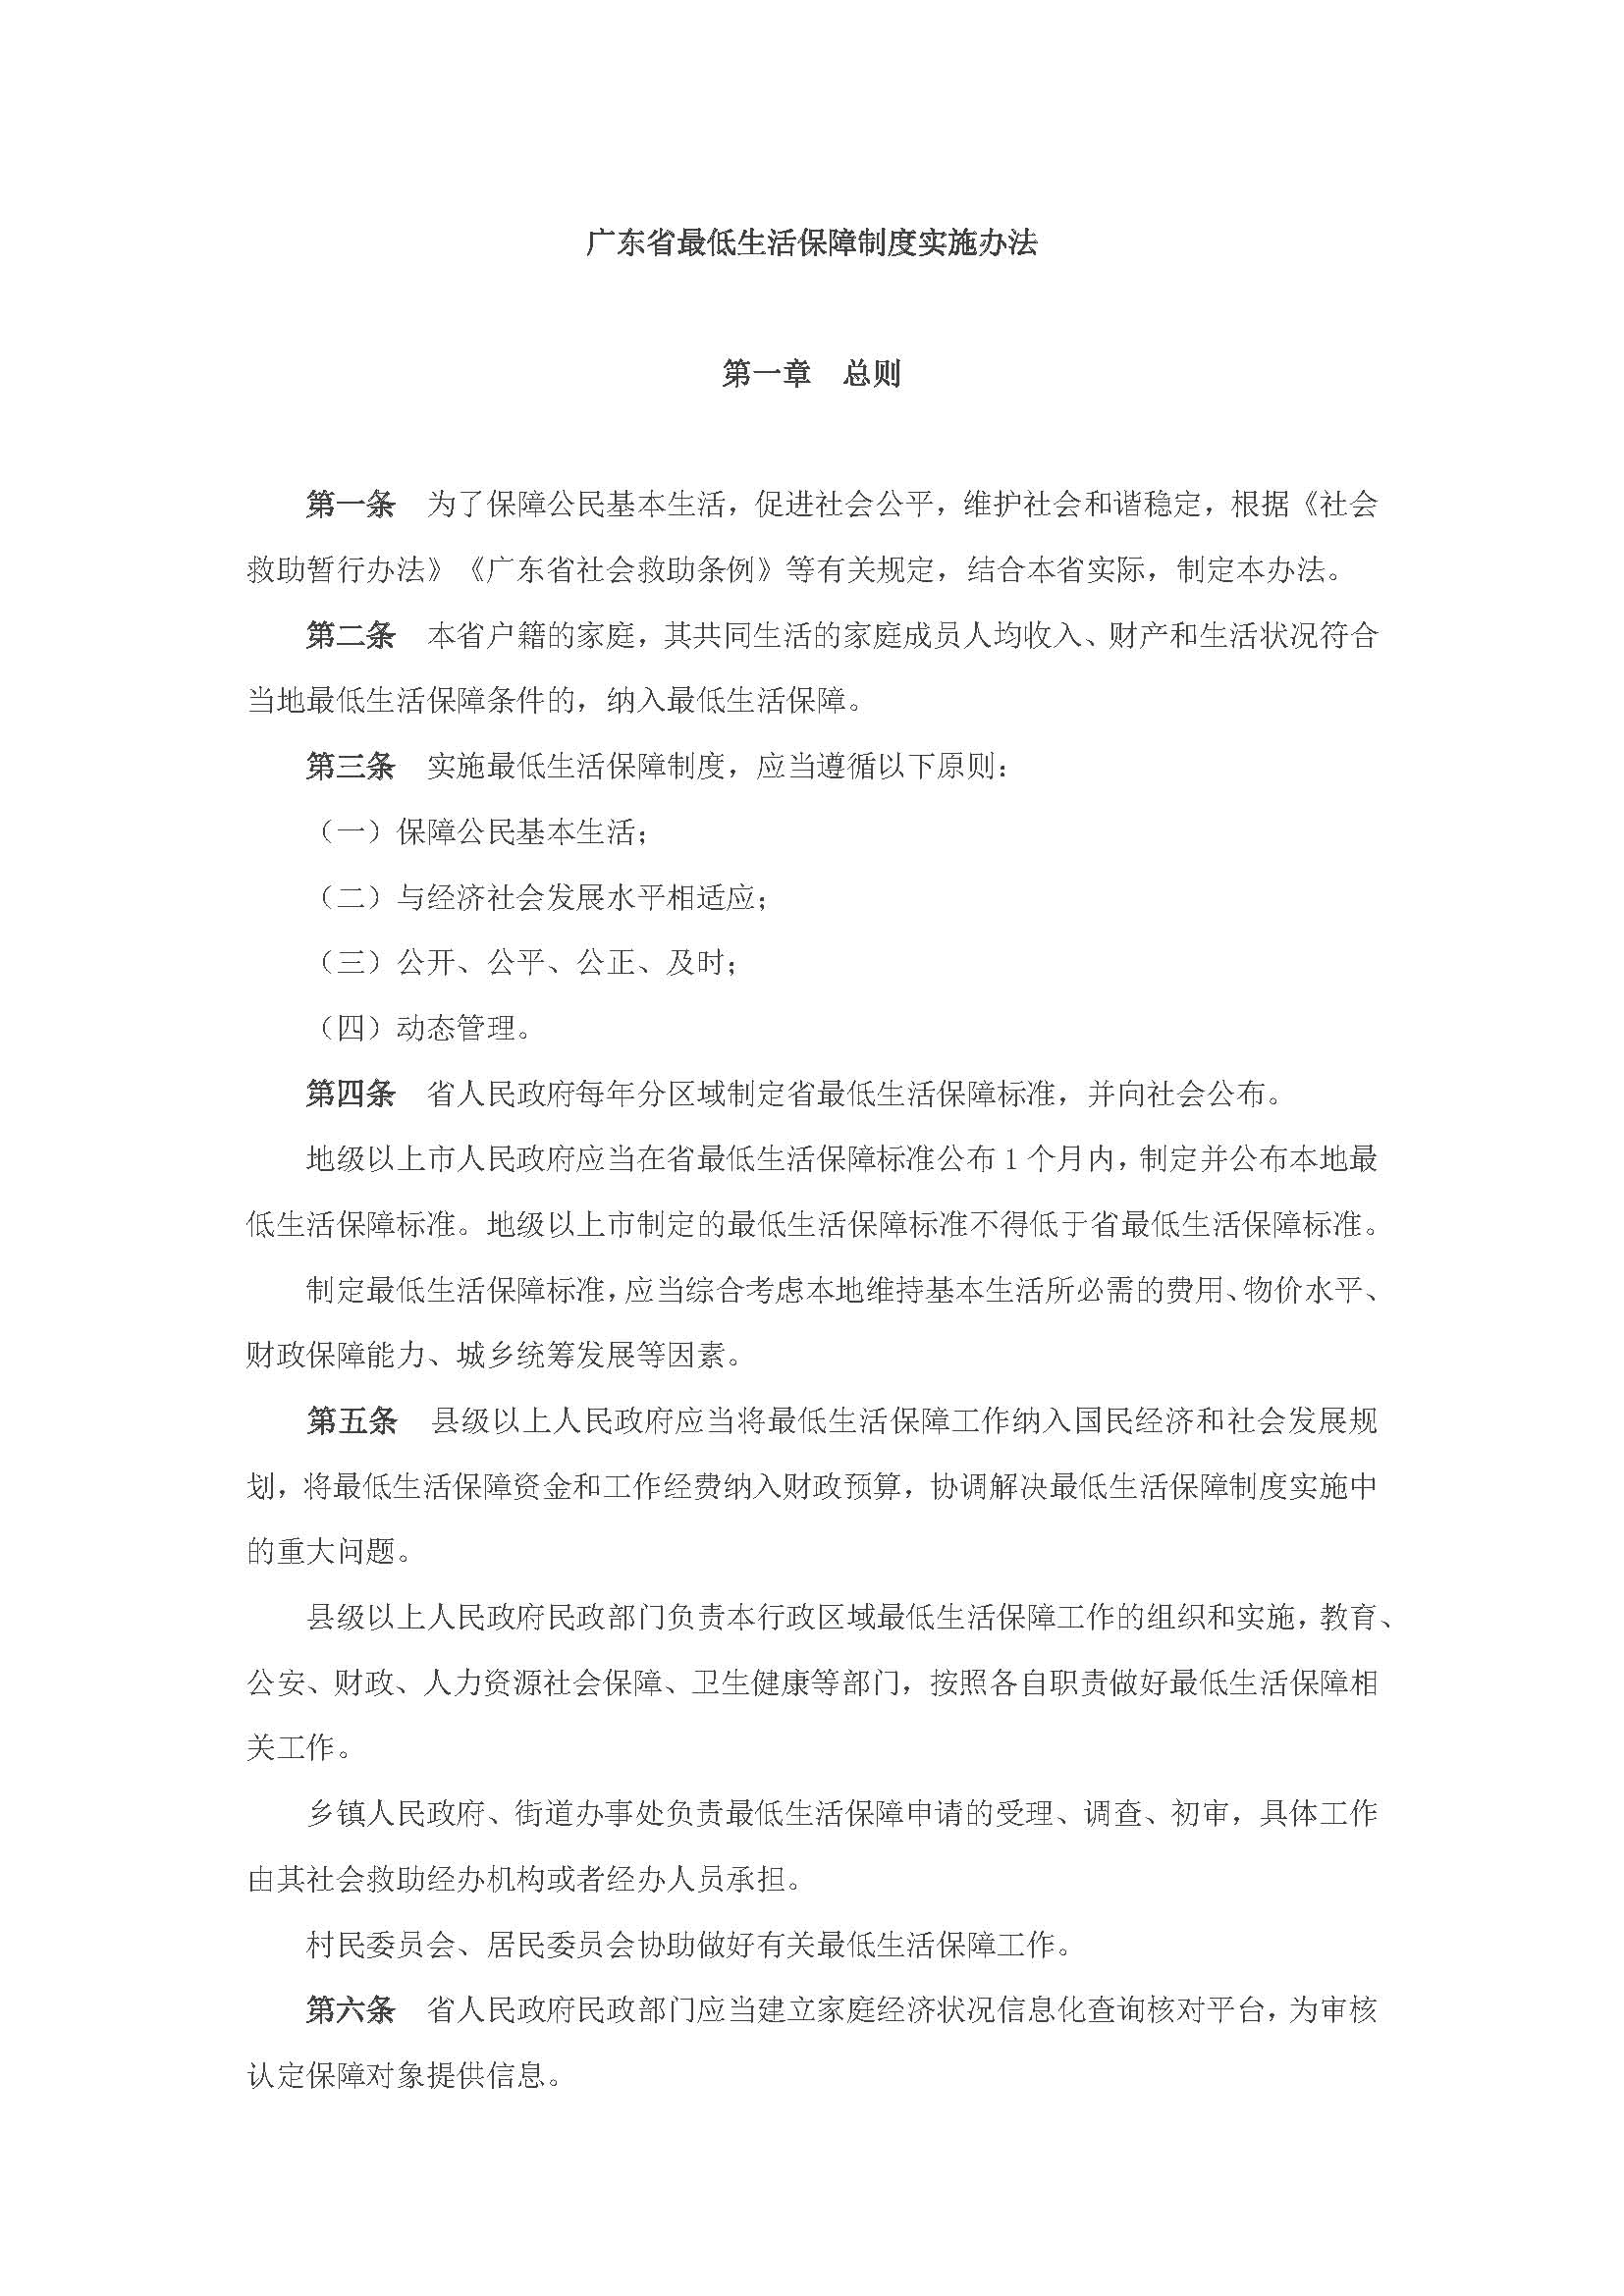 广东省最低生活保障制度实施办法_页面_2.jpg